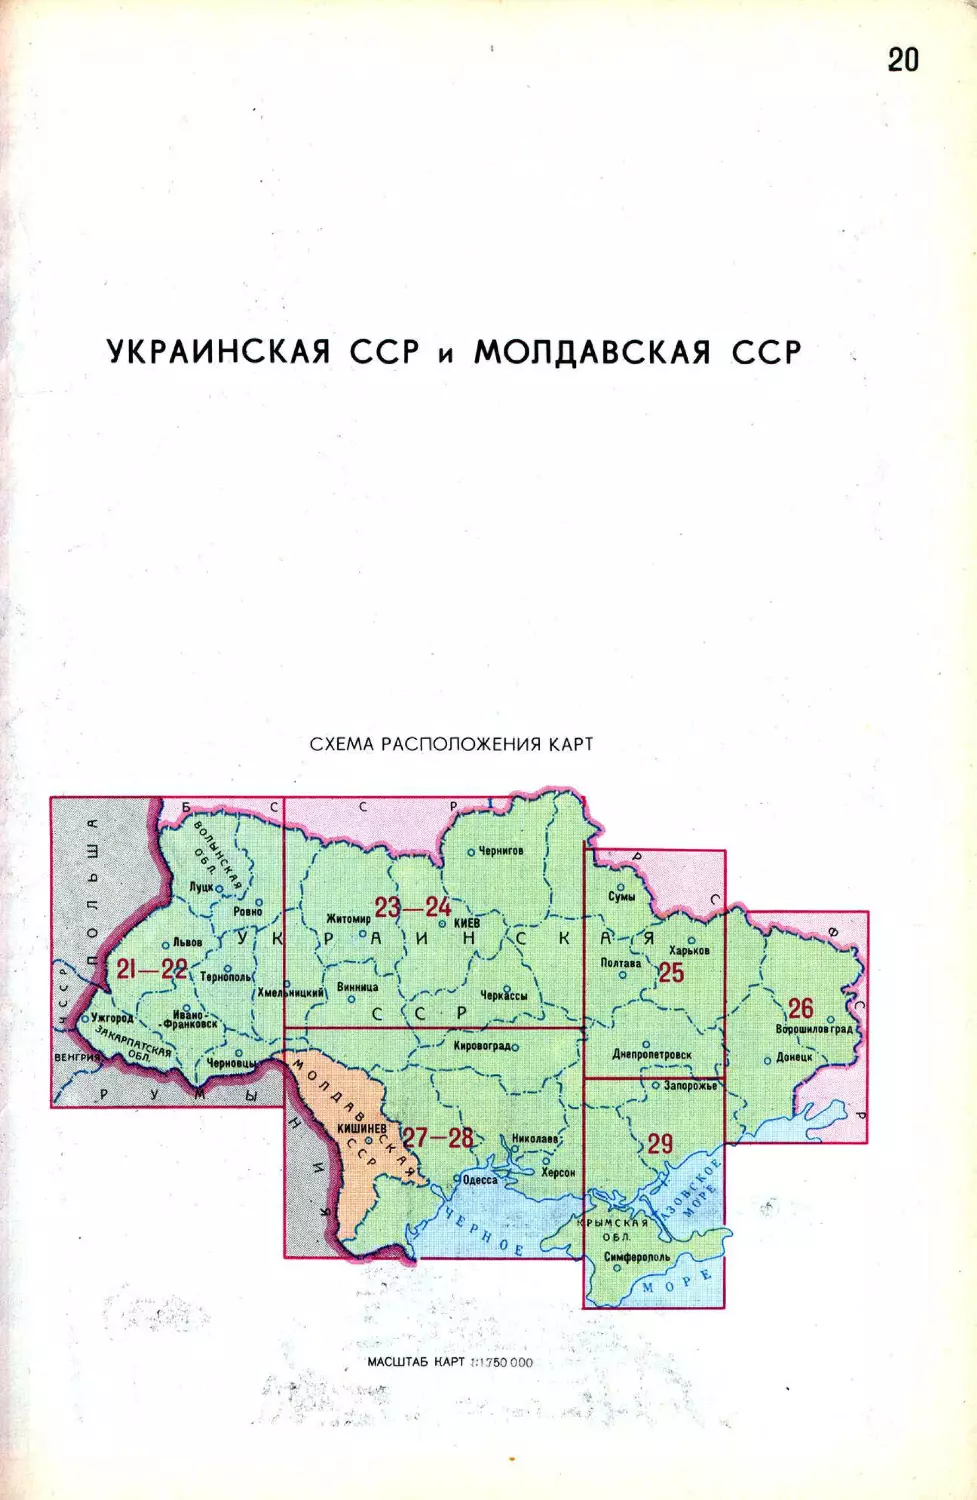 020-Ukrainskaya-SSR-i-Moldovskaya-SSR-(Shema-raspolozheniya-kart)